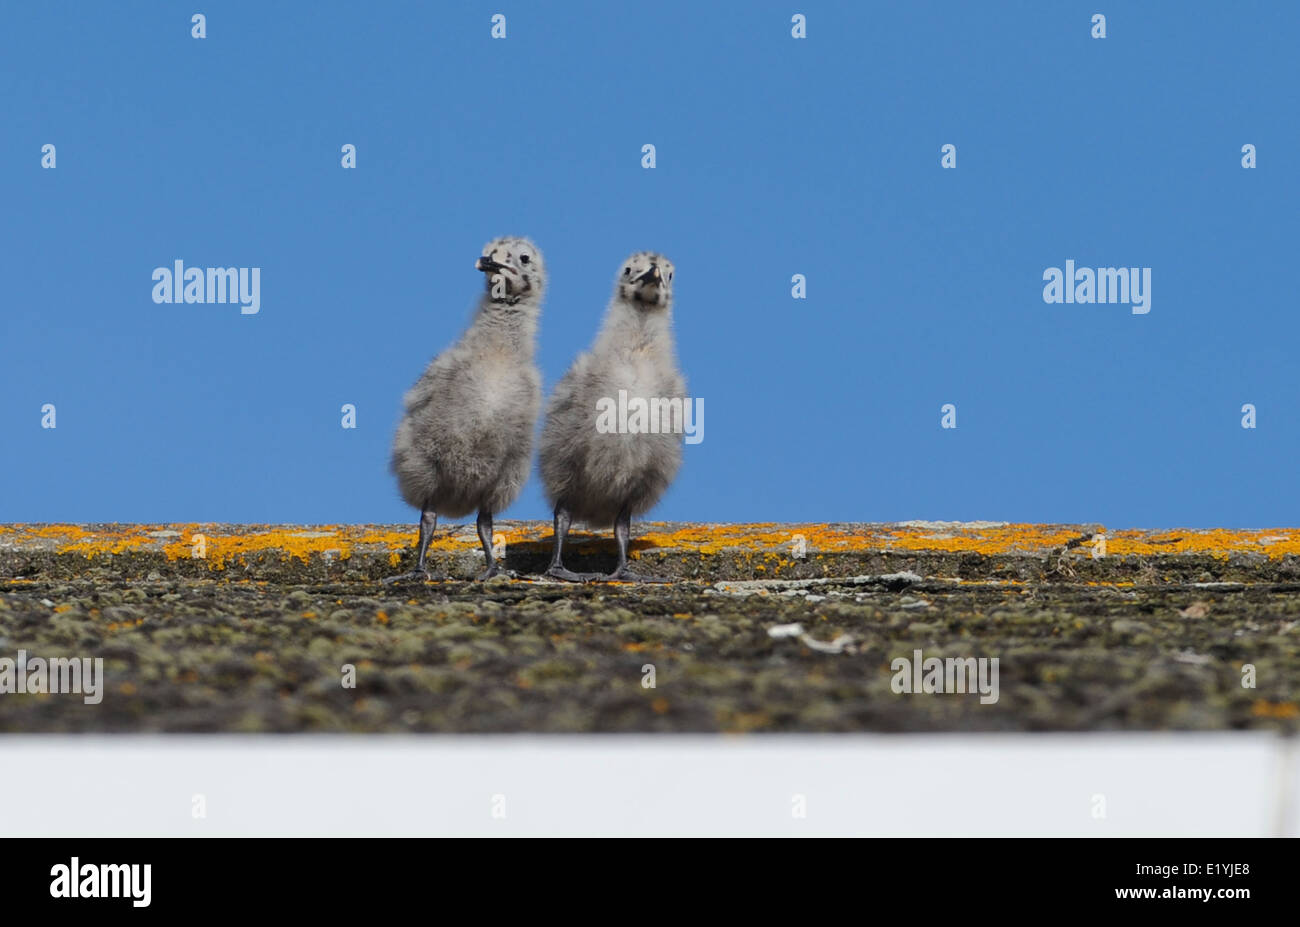 Deux oisillons Goélands prendre des mesures provisoires sous le regard attentif de leurs parents à travers le toit d'une maison à Brighton Banque D'Images